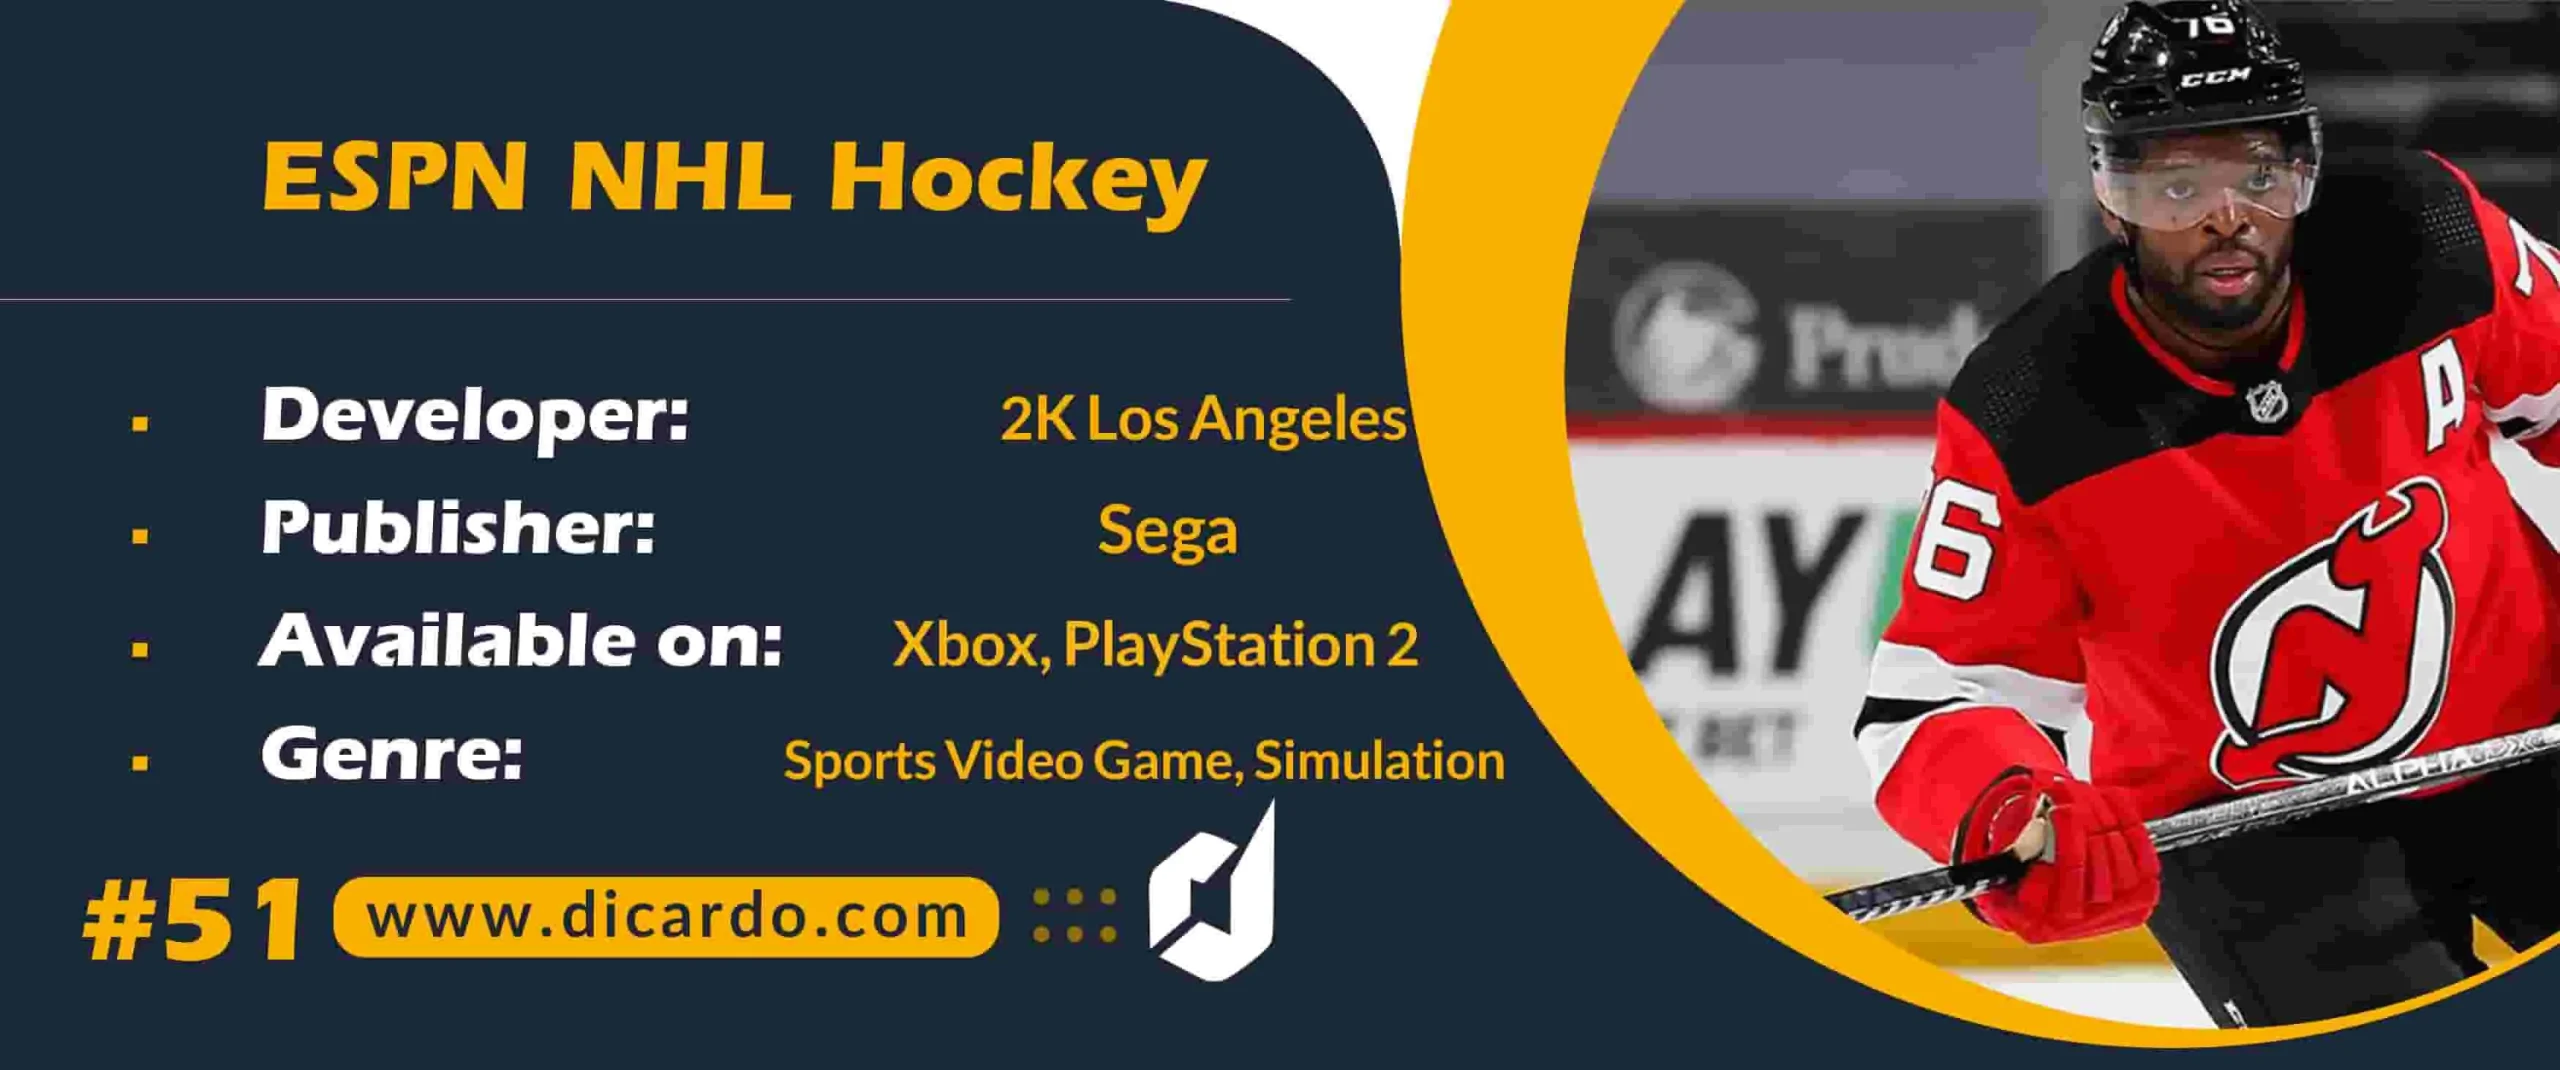 #51 ای اس پی ان ان اچ ال هاکی ESPN NHL Hockey از بهترین بازیهای ایکس باکس سگا